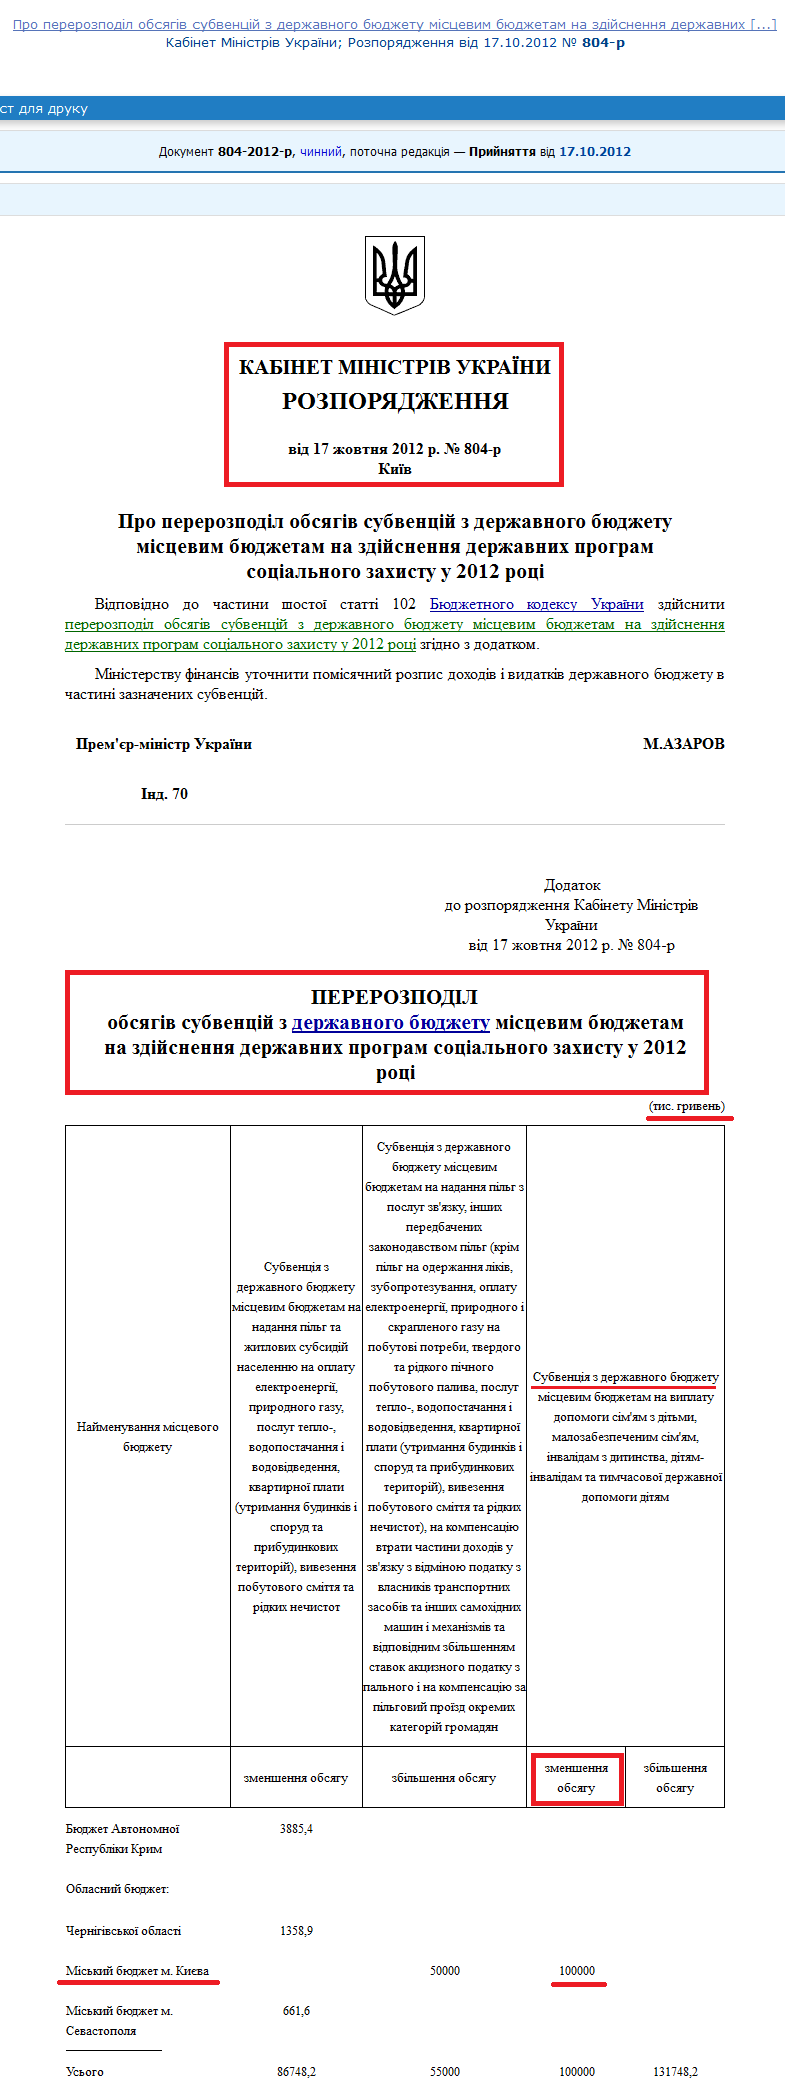 http://zakon4.rada.gov.ua/laws/show/804-2012-%D1%80